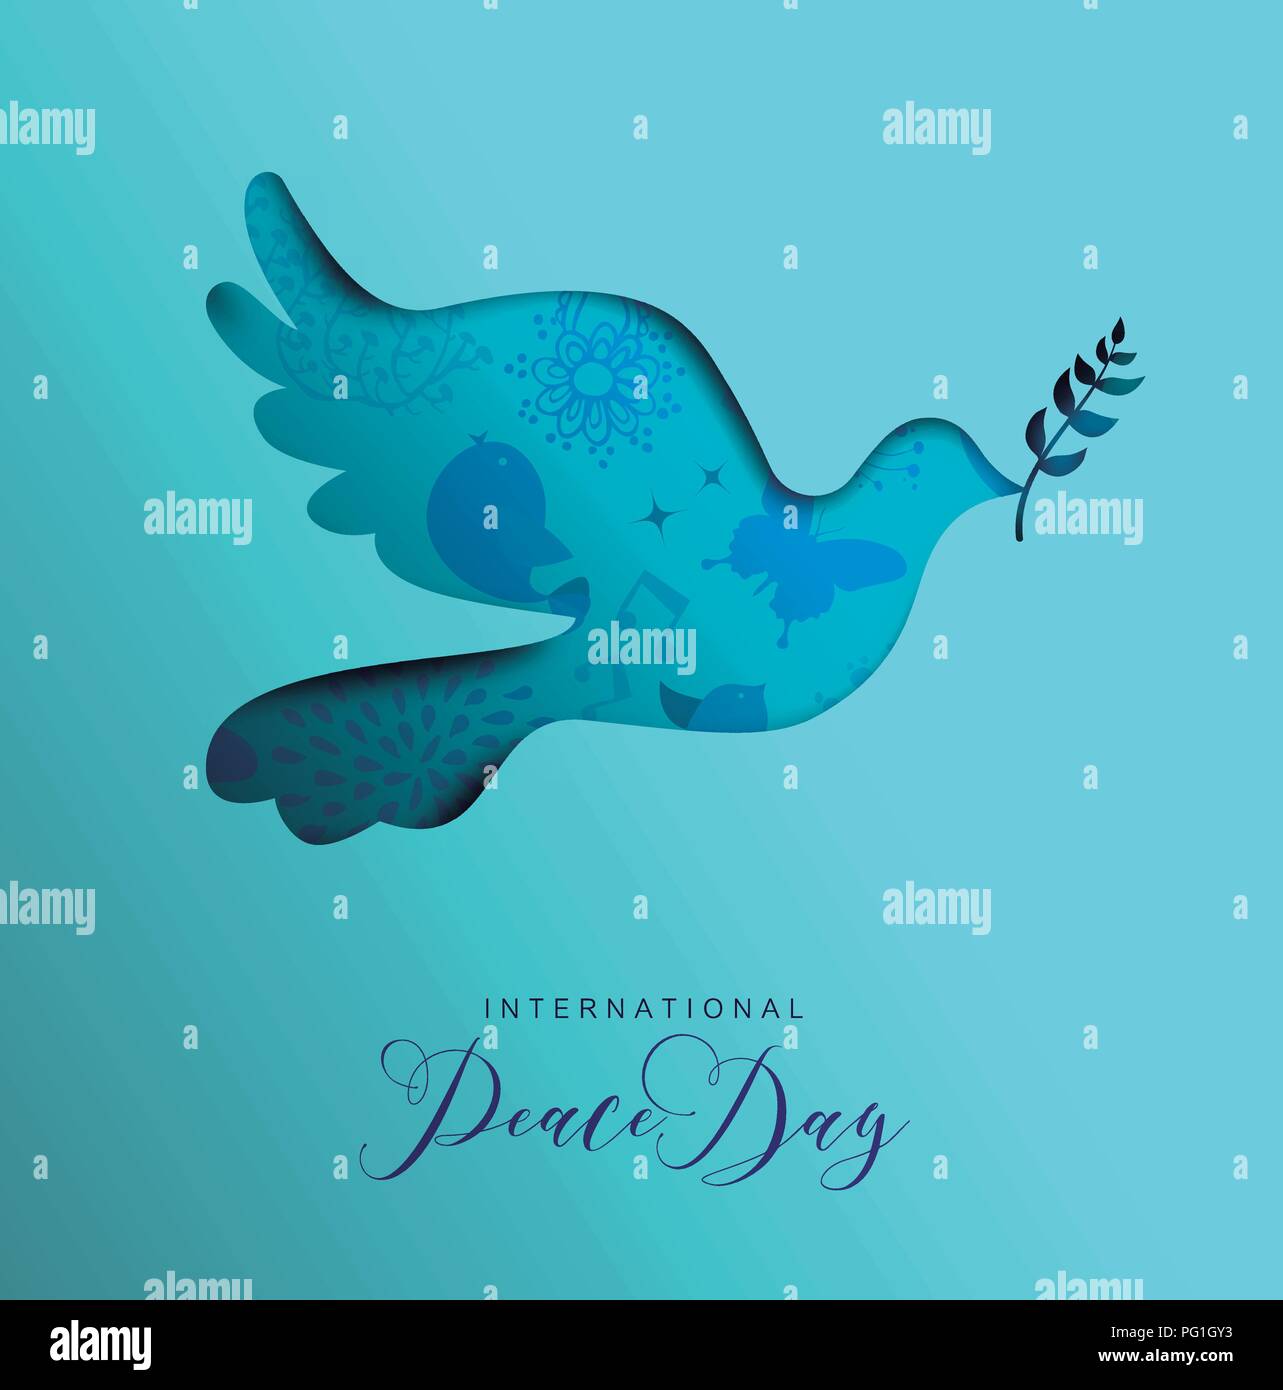 Internationalen Frieden Tag Feiertag Illustration. Papier schneiden taube vogel Form silhouette Ausschnitt mit der Natur doodle Dekoration. EPS 10 Vektor. Stock Vektor